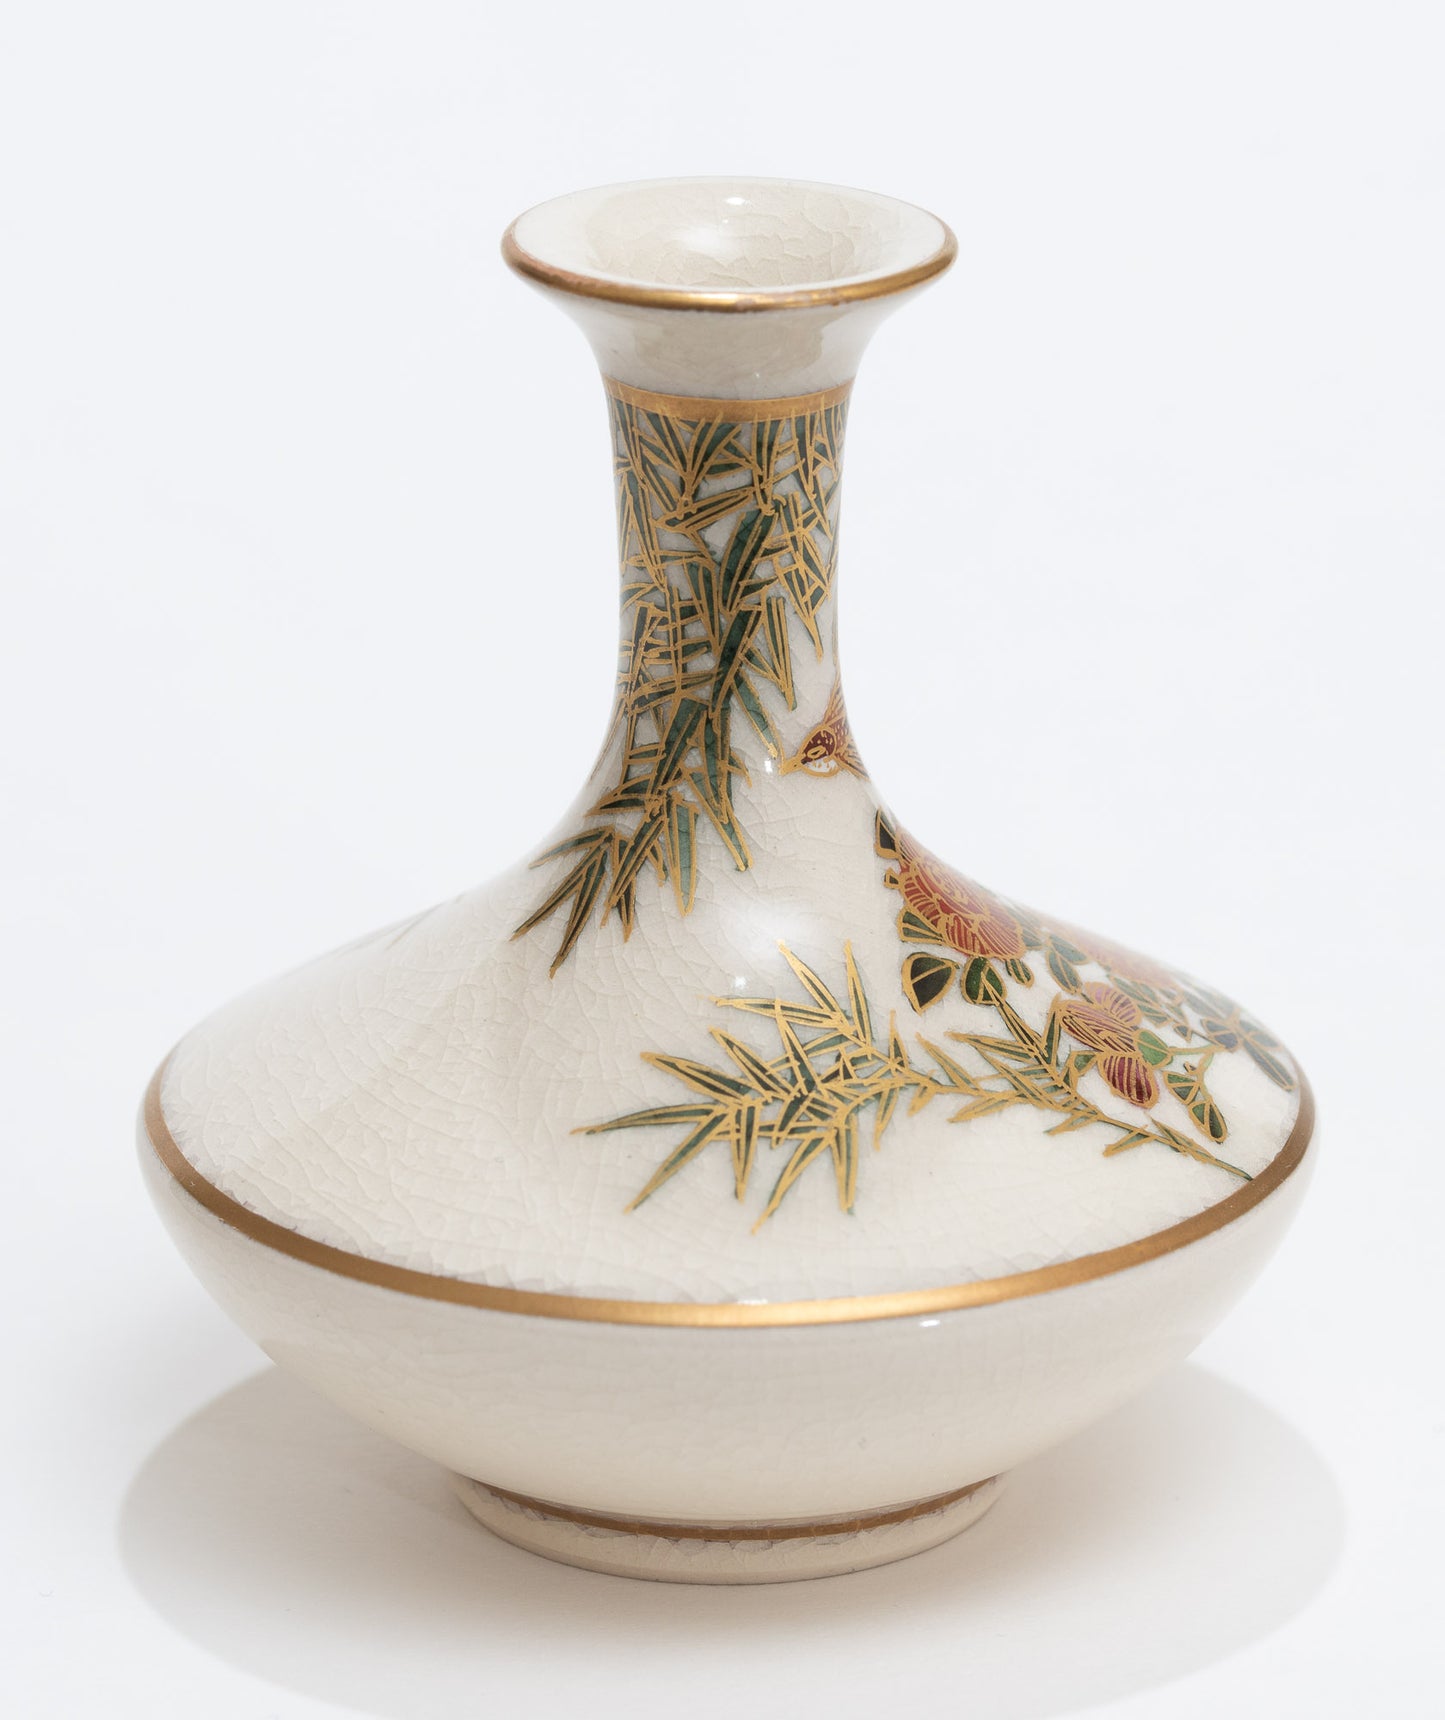 Antique Japanese Satsuma Ware Pottery Mini Vase - Hand Painted Meiji Era c1900 (3113)